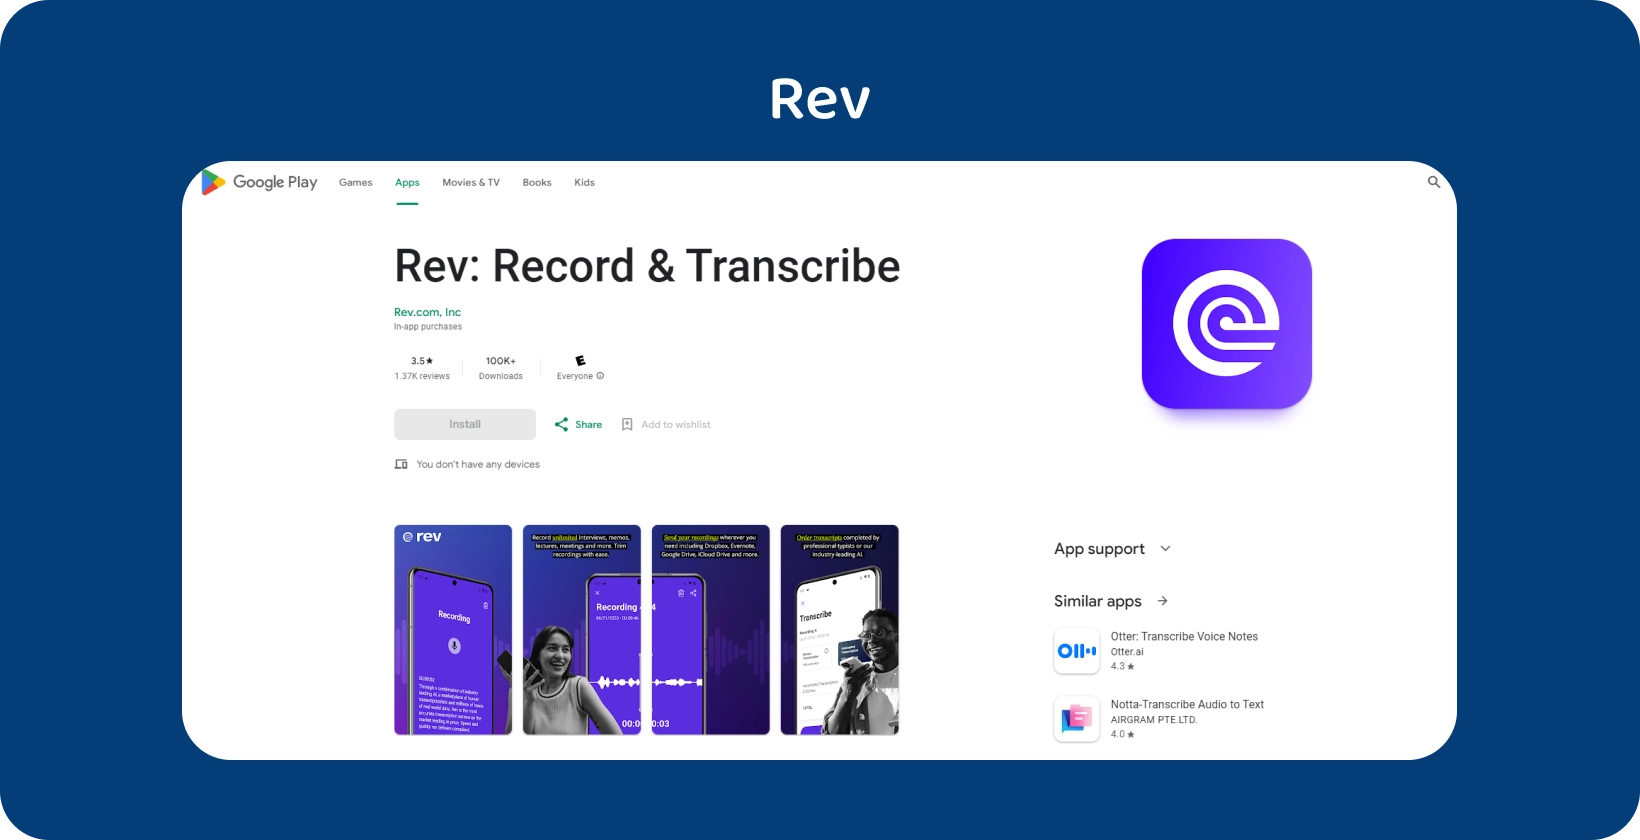 Google Play Store exibição de Rev aplicativo, destacando recursos para gravação e transcrição em dispositivos Android.